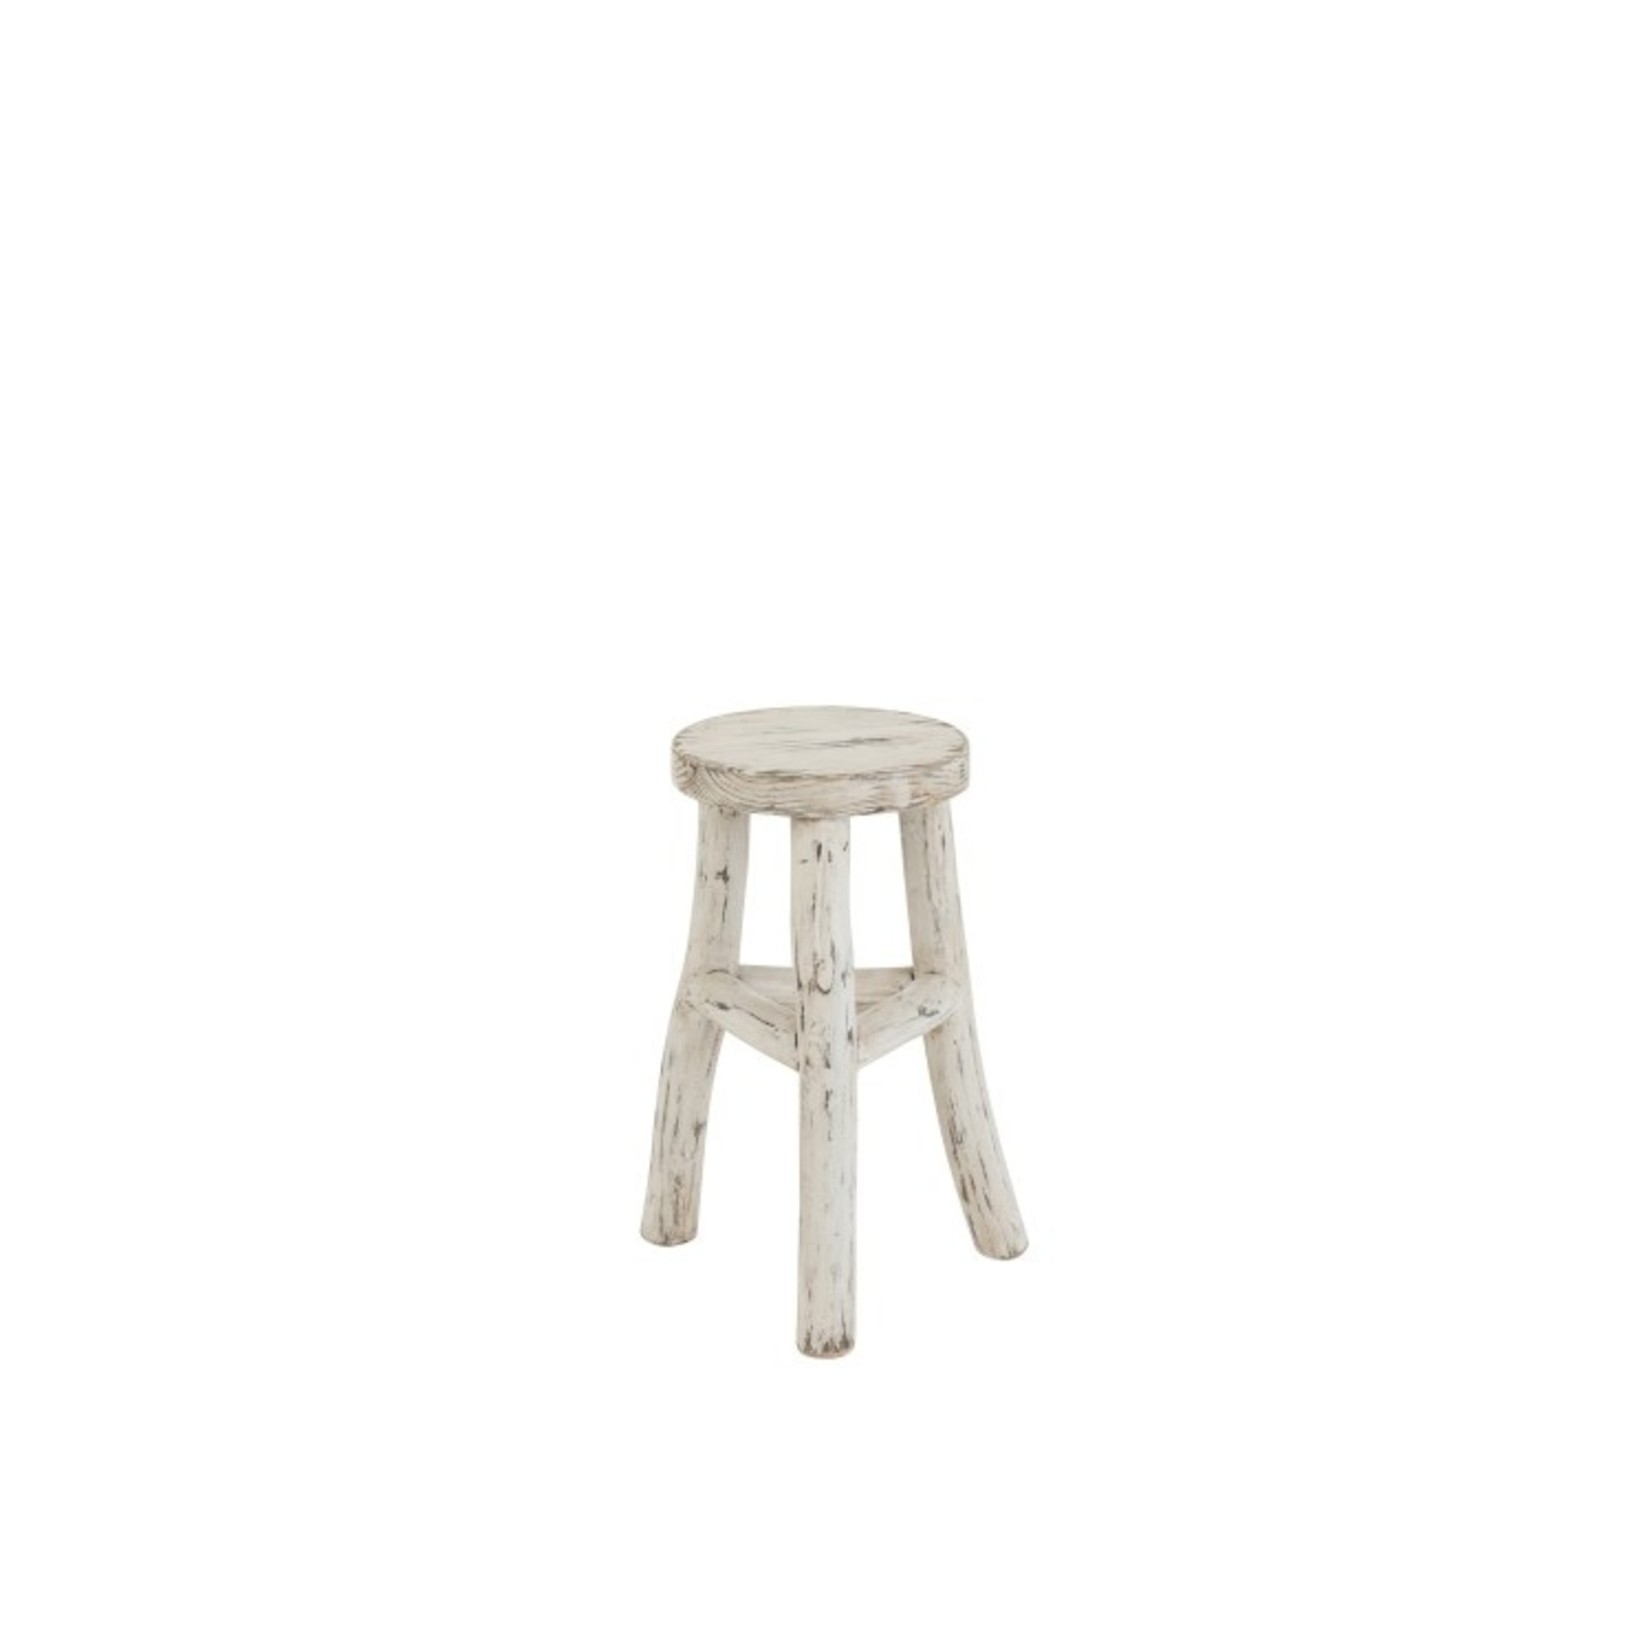 J-Line Side stool Ibiza Style Round Wood - White Wash